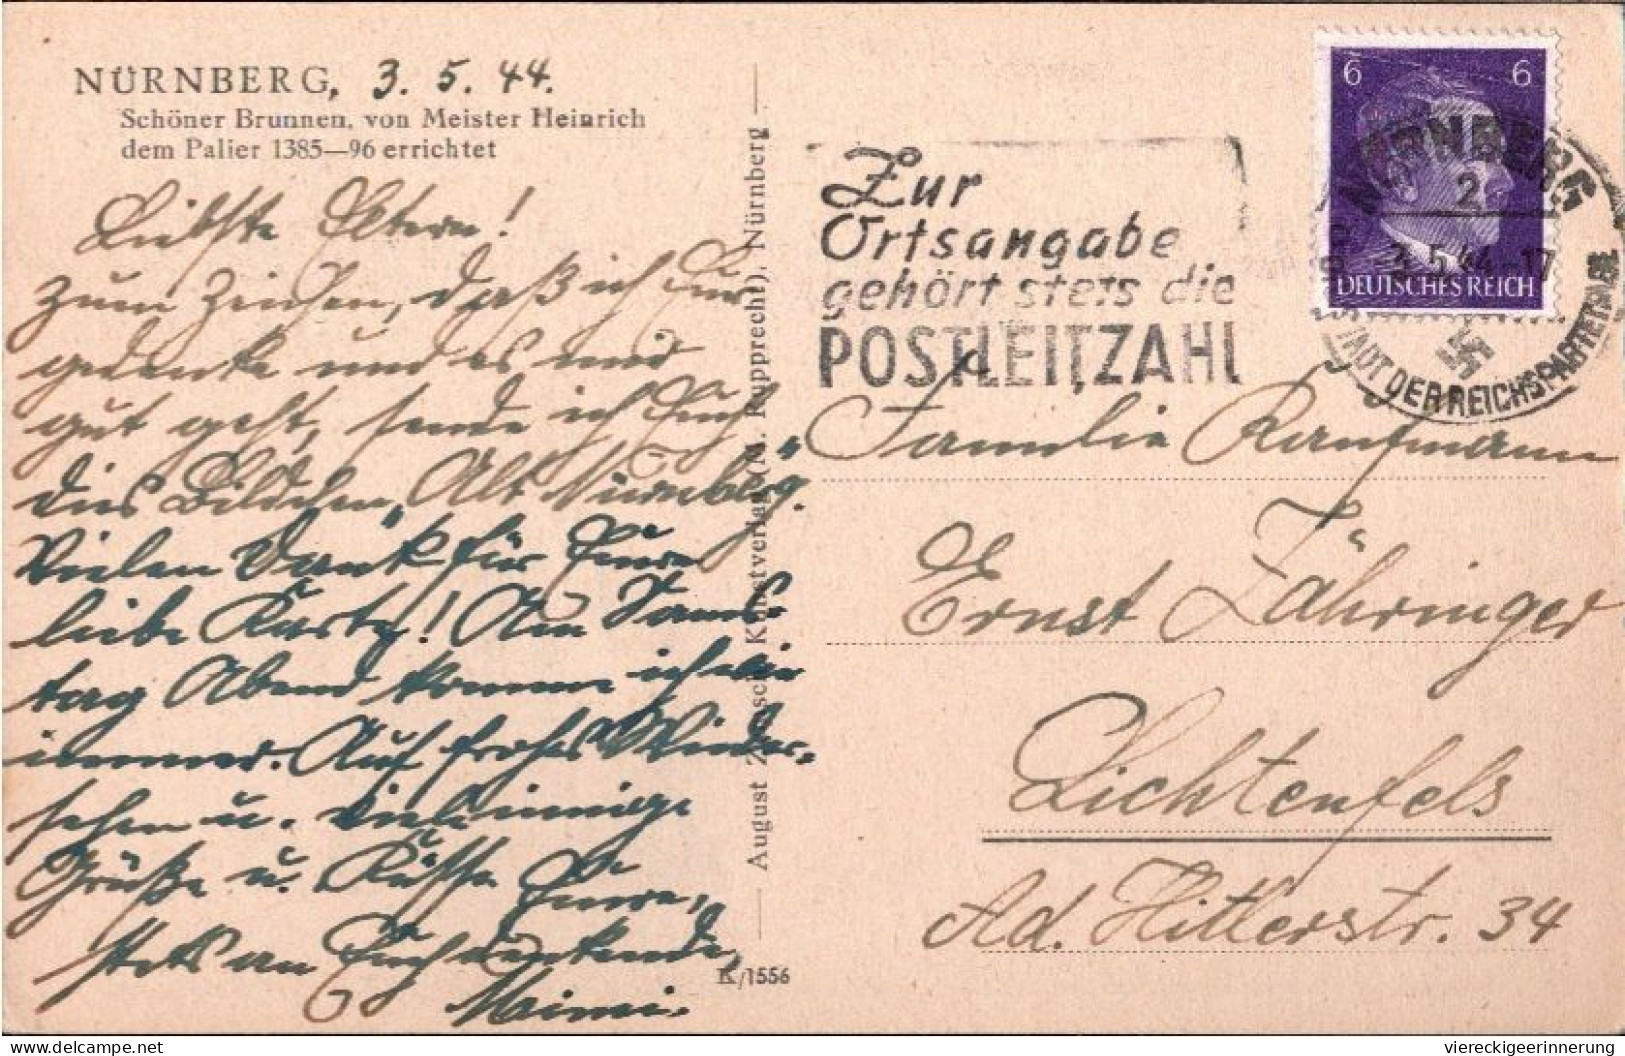 ! Karte Aus Nürnberg, Maschinenwerbestempel 1944, Posteigenwerbung, Zur Ortsangabe Gehört Stets Die  Postleitzahl - Storia Postale